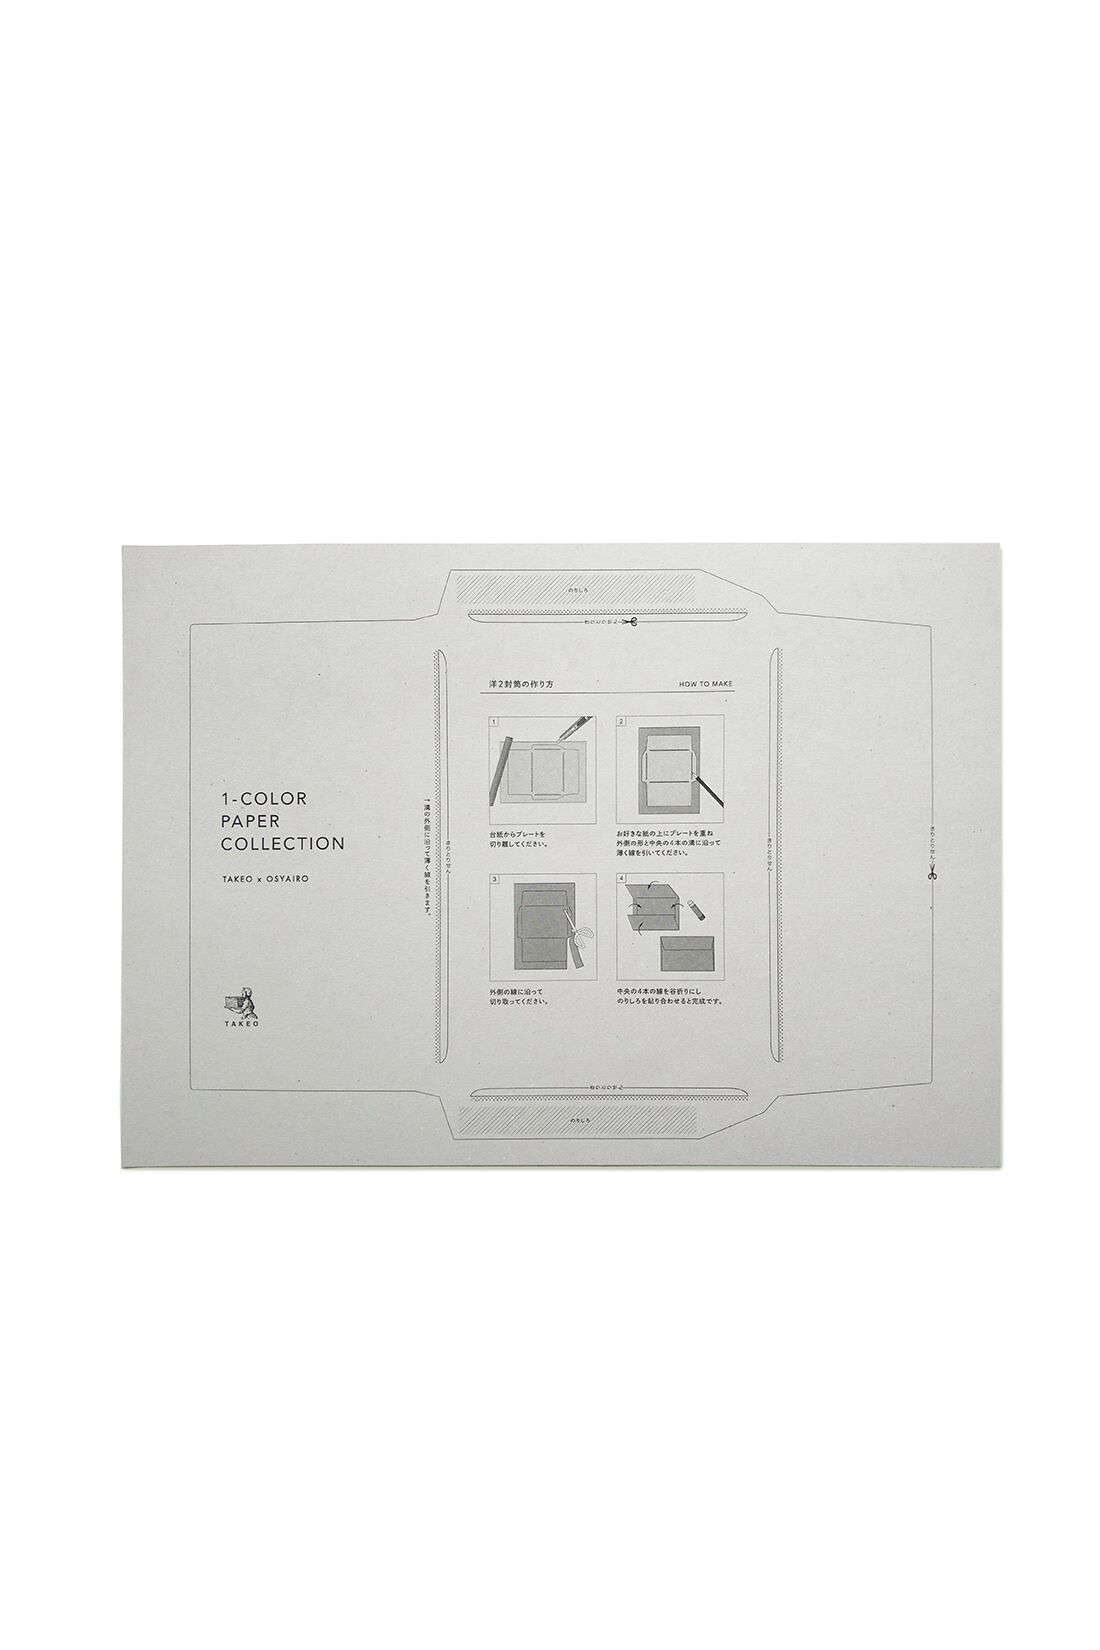 OSYAIRO|OSYAIRO 紙の専門商社竹尾が選ぶ　色を楽しむ紙セットの会〈紫〉|付属の型紙を使ってA4サイズの紙で封筒がきれいに作れます。